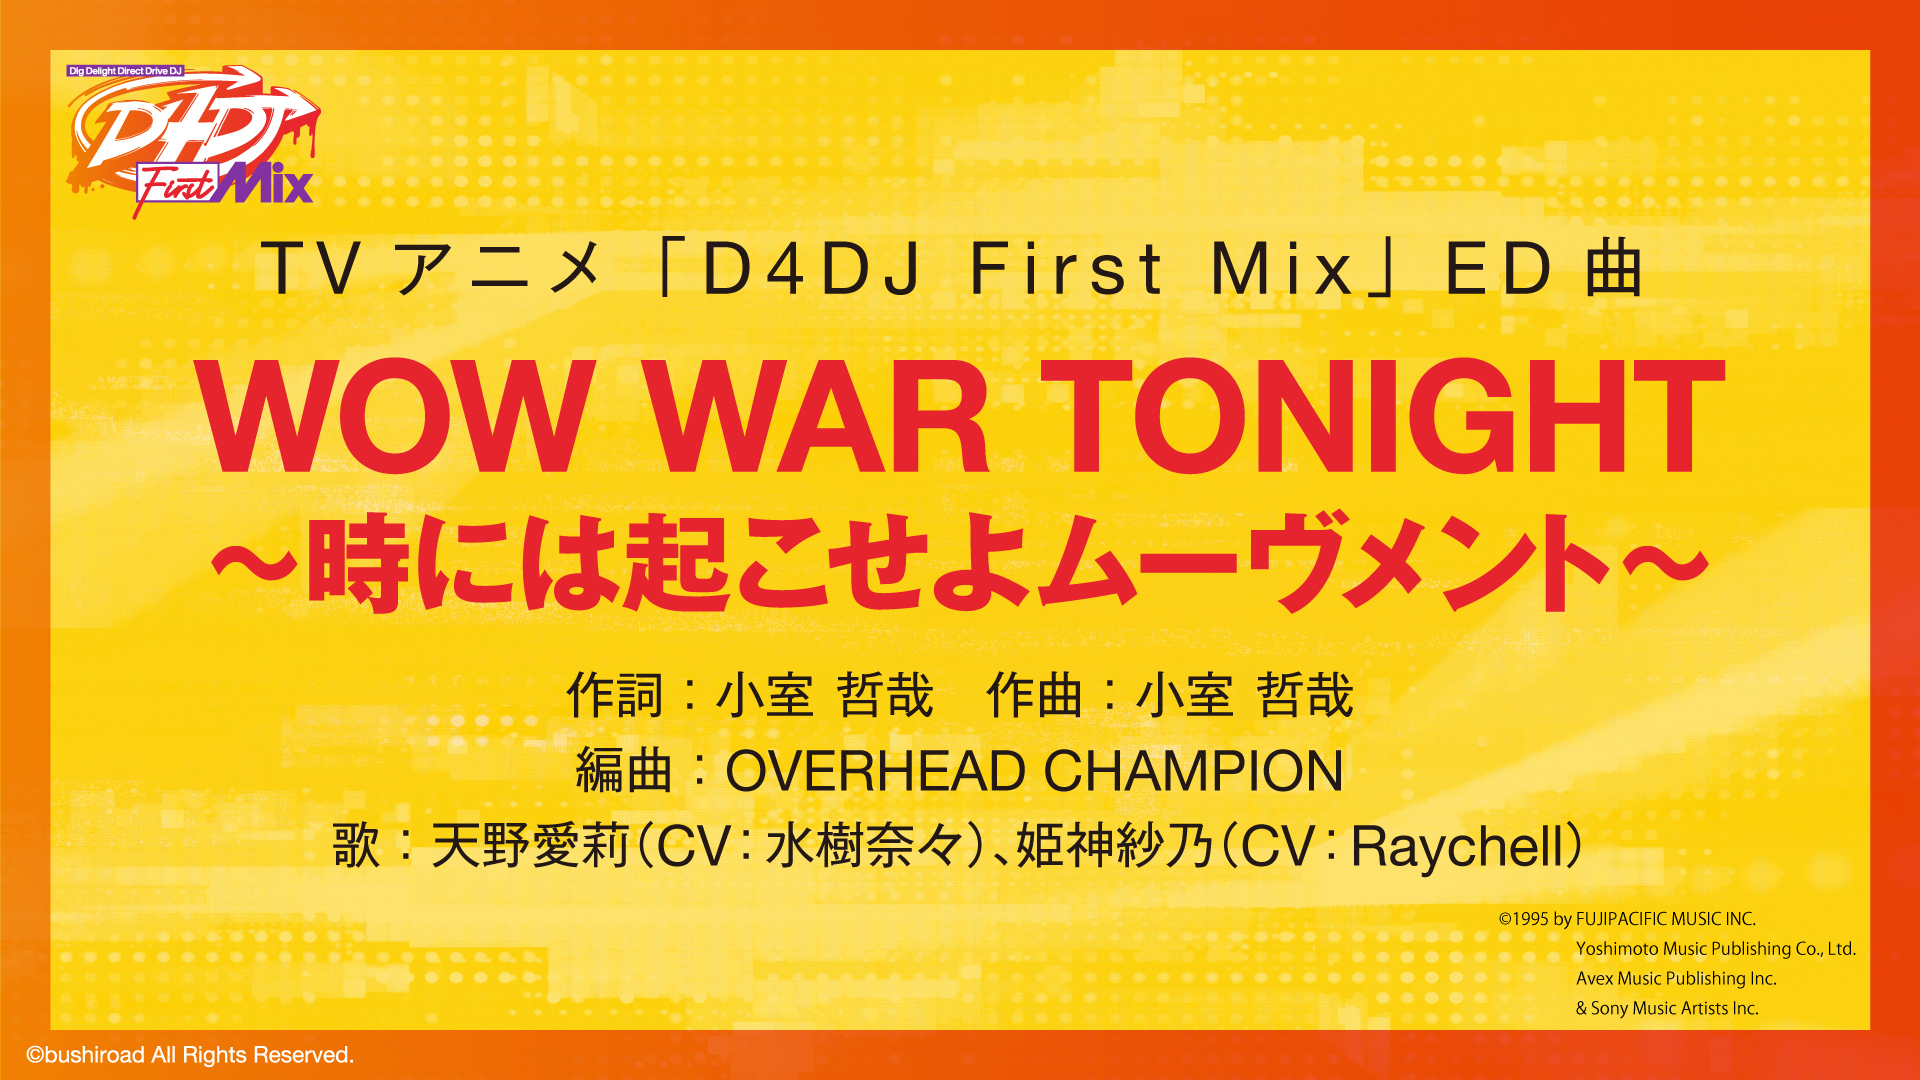 TVアニメ『D4DJ First Mix』のエンディング曲「WOW WAR TONIGHT ～時には起こせよムーヴメント～」